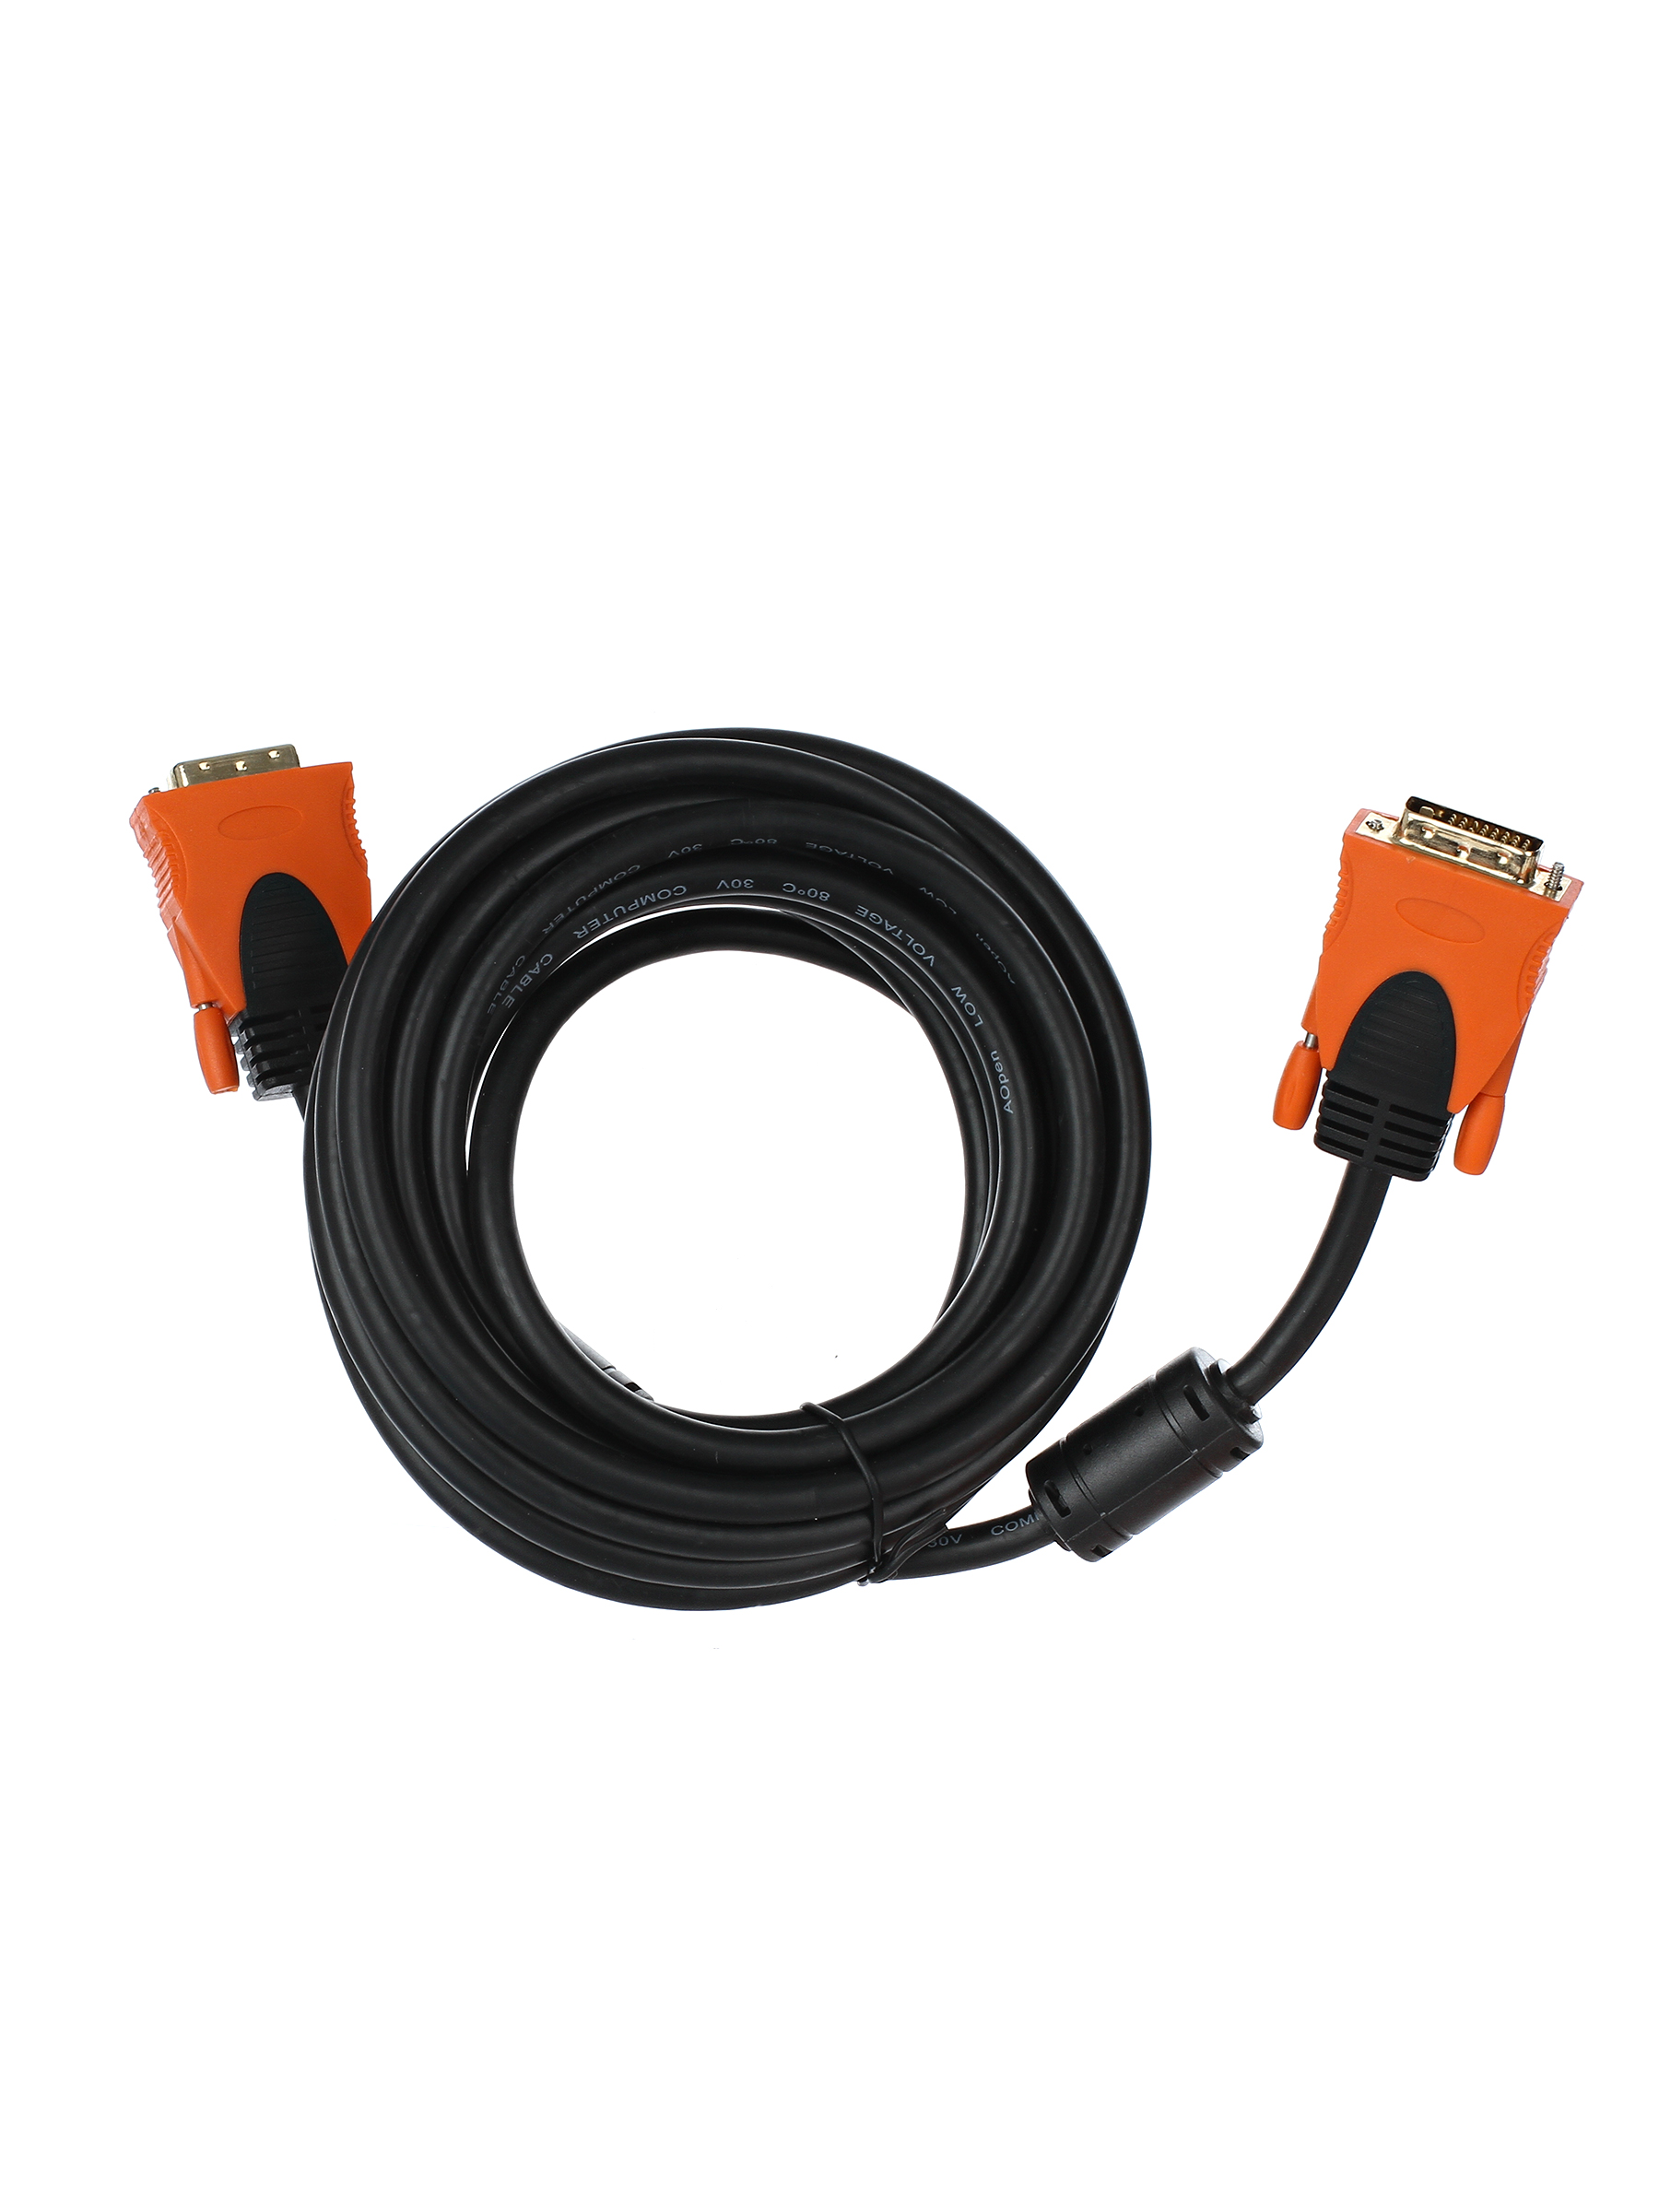 Кабель DVI(25M)-DVI(25M) Single Link, ферритовый фильтр, 5 м, черный/оранжевый Aopen/Qust (ACG446D-5M)